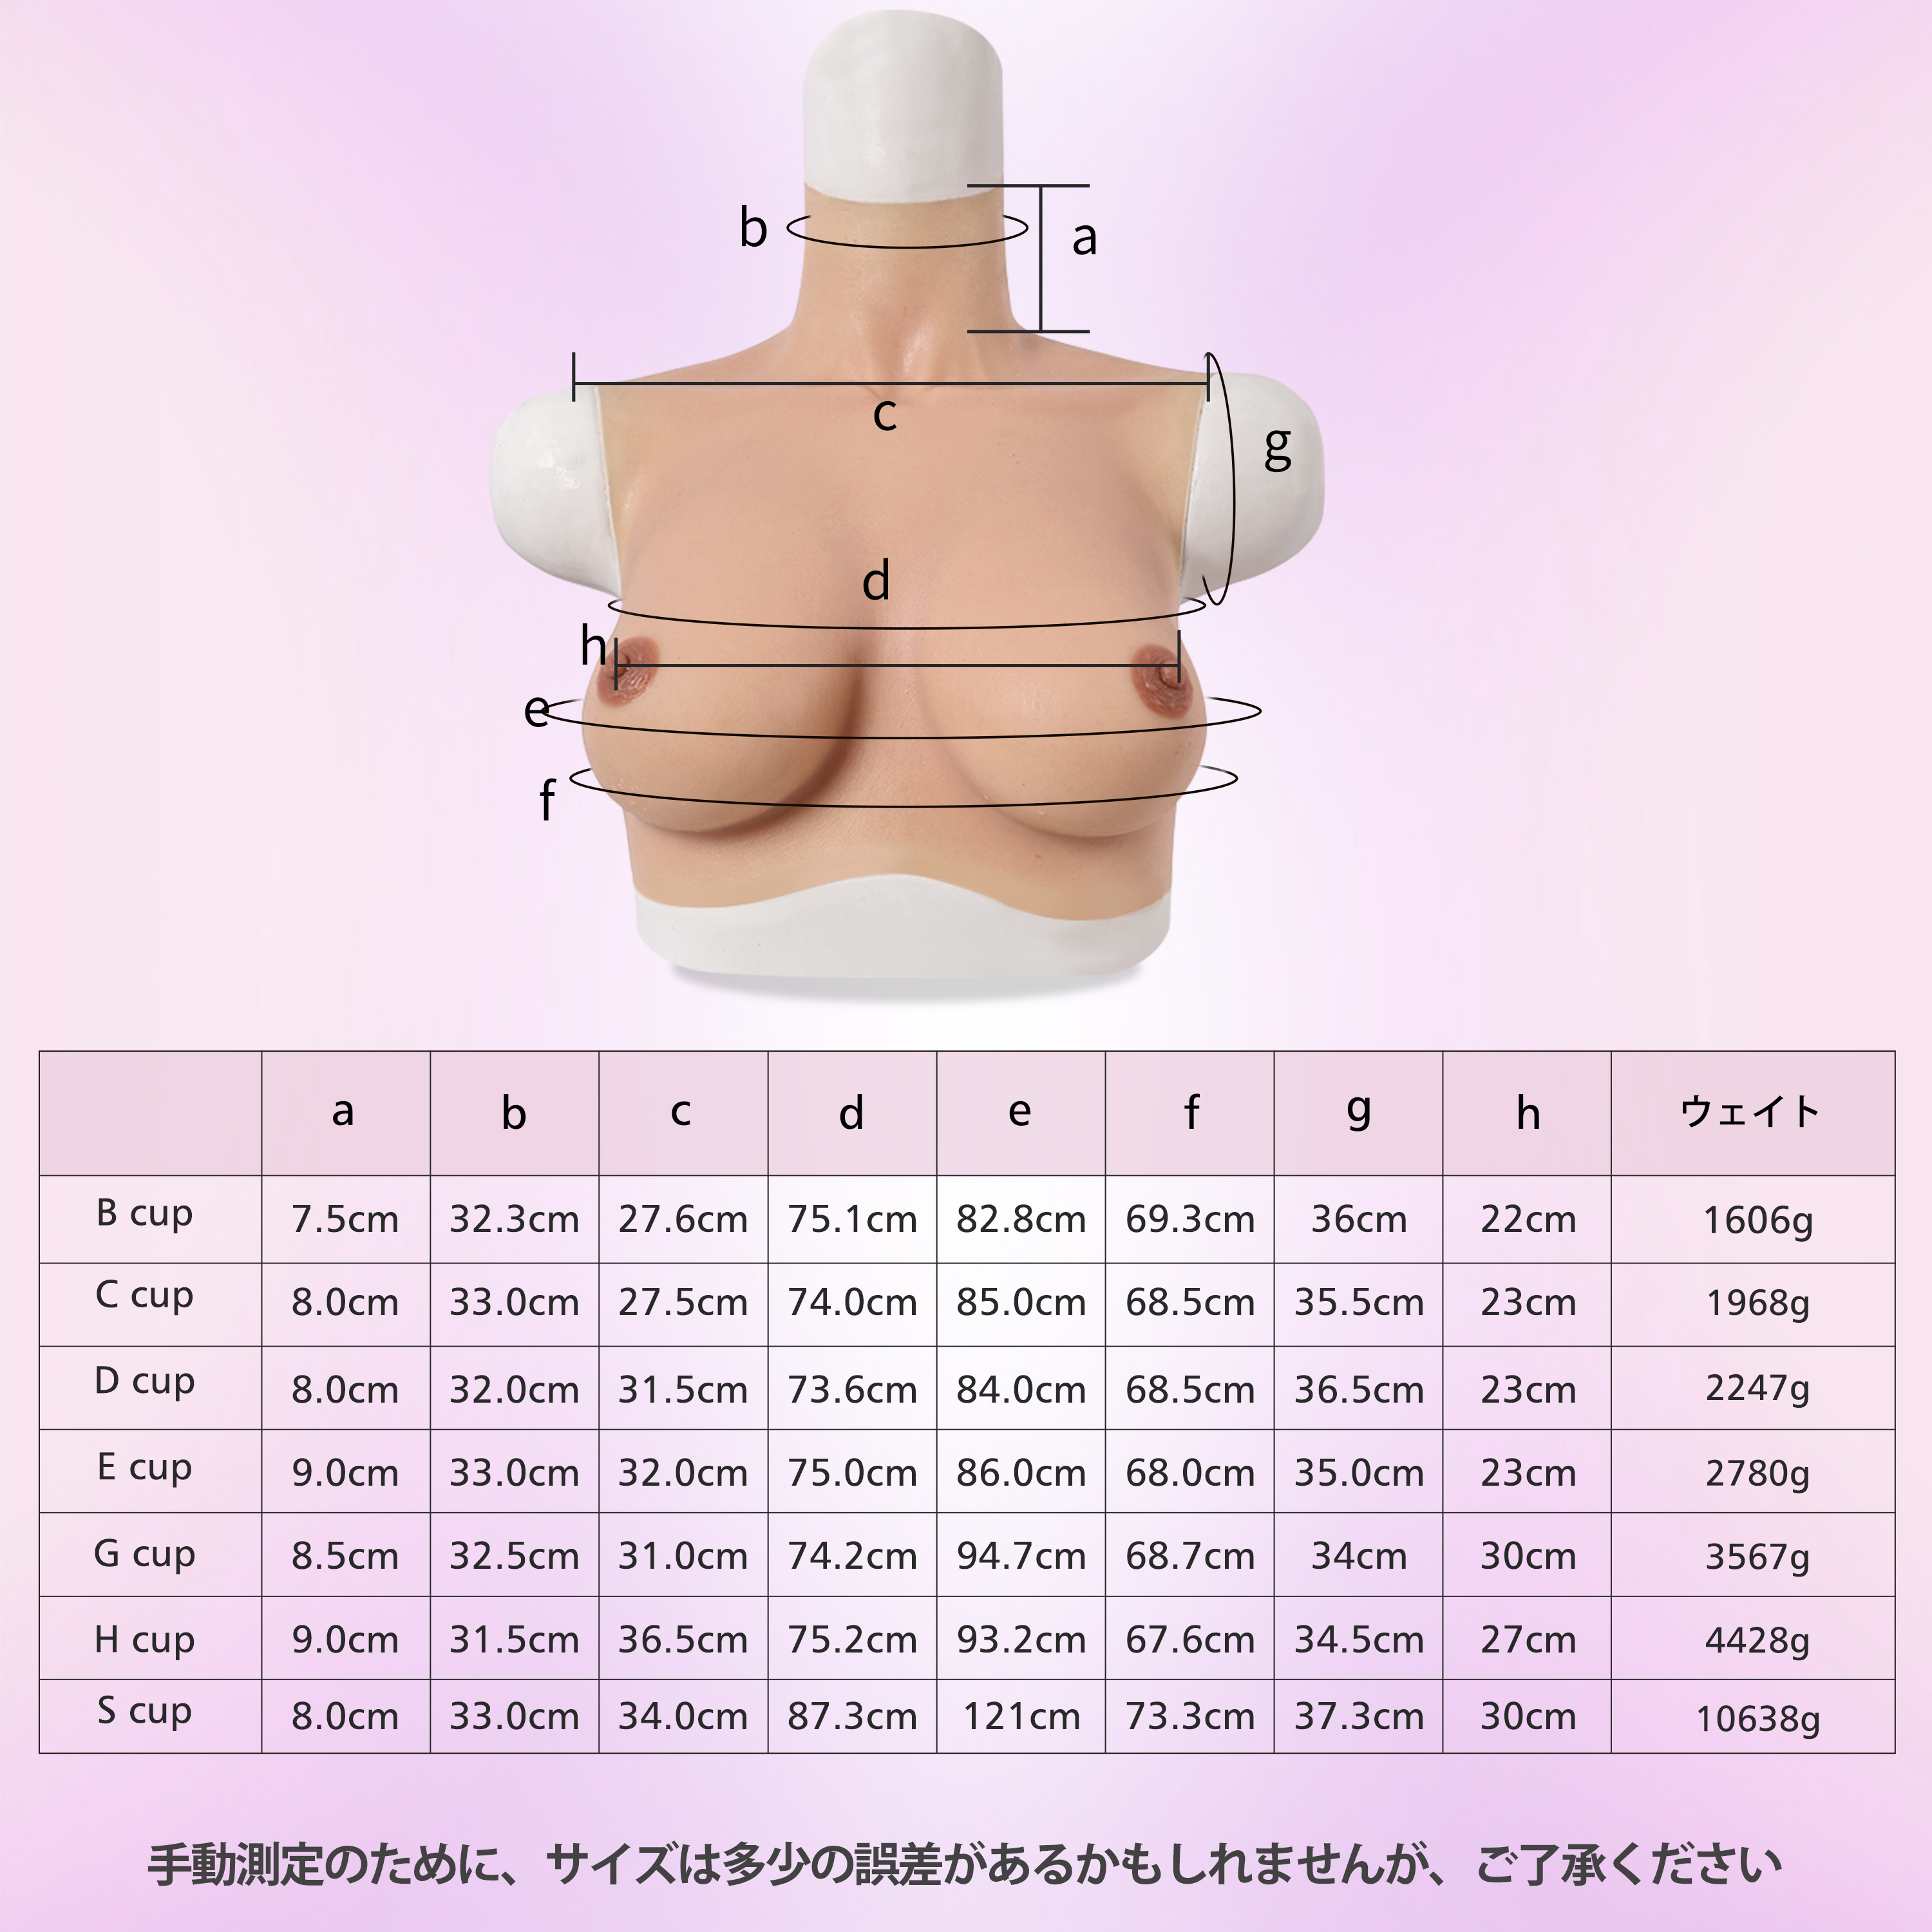 ROANYER E カップイーストウエスト型ブレスト シリコンバスト 女装 おっぱい 人工乳房 偽乳 仮装